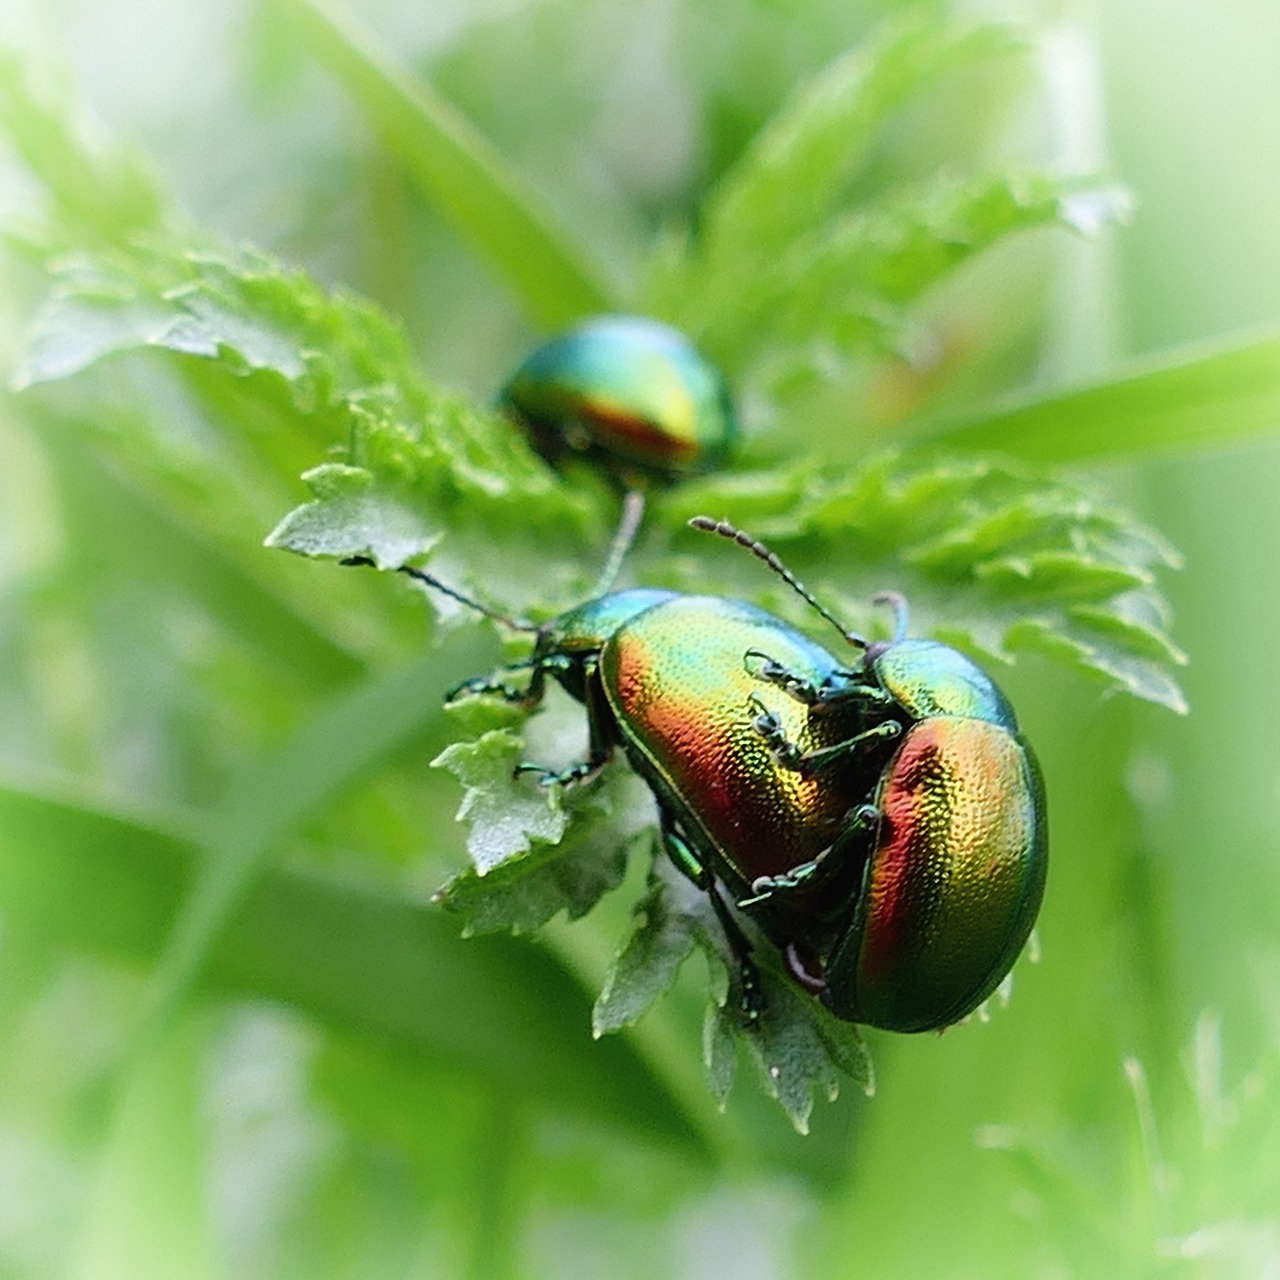 Beetle,ovaläugiger leaf beetle,green,iridescent,nature - free image ...